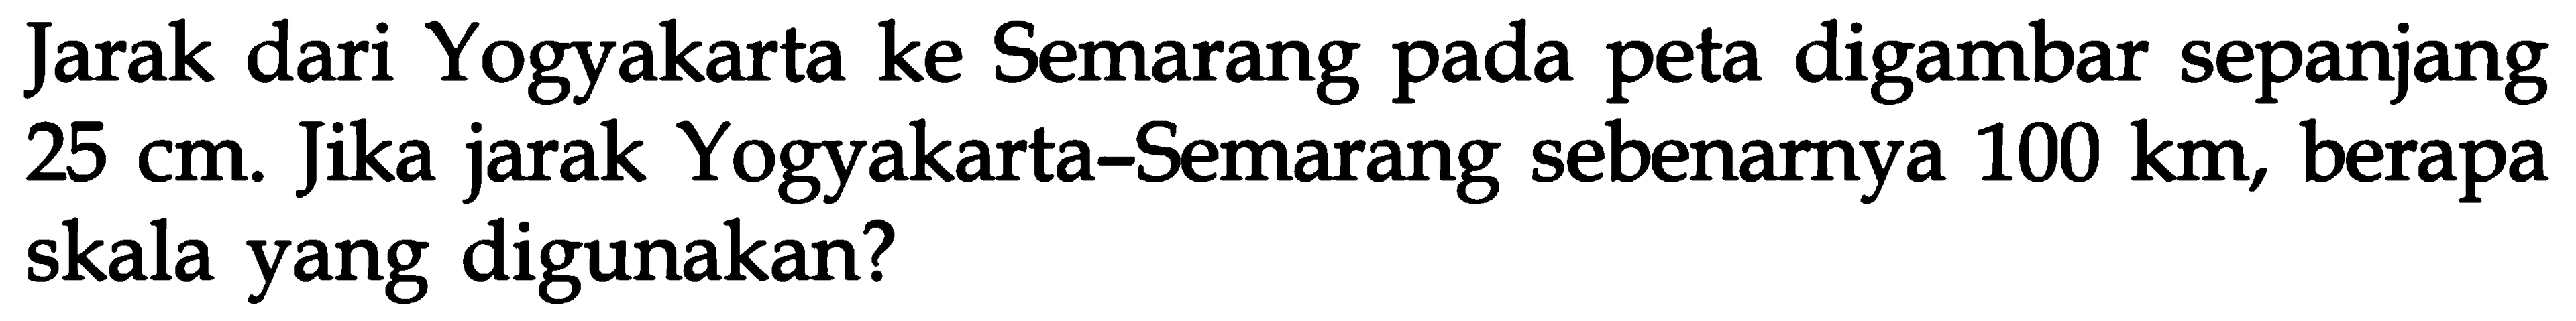 Jarak dari Yogyakarta ke Semarang pada peta digambar sepanjang 25 cm. Jika jarak Yogyakarta-Semarang sebenarnya 100 km, berapa skala yang digunakan?